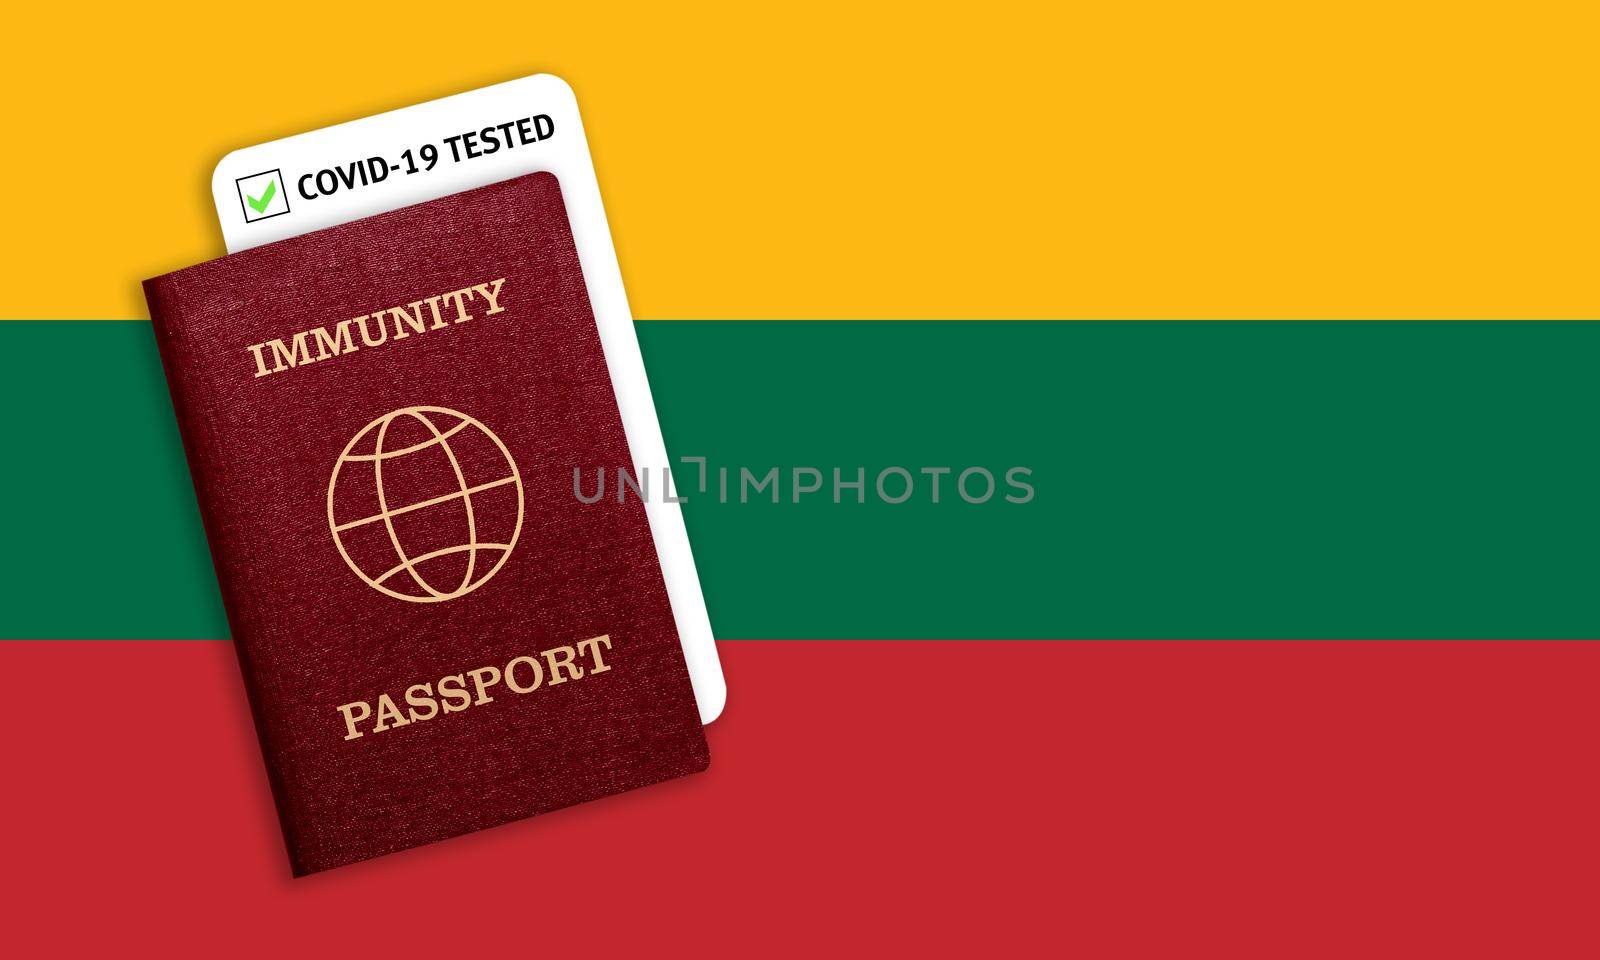 Immunity passport and coronavirus test with flag of Lithuania by galinasharapova